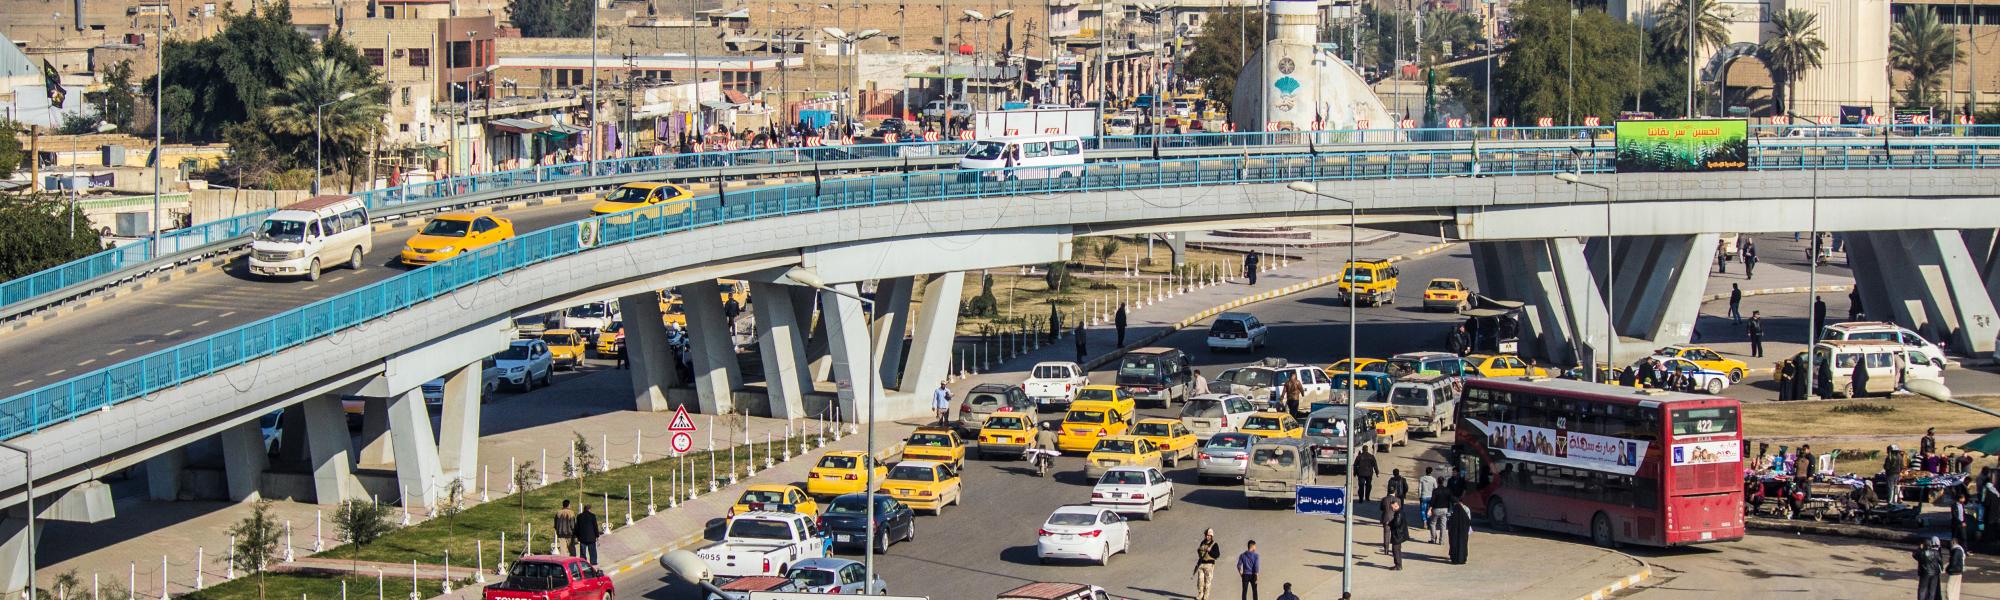 伊拉克汽车和旅游协会加入国际道路运输联盟